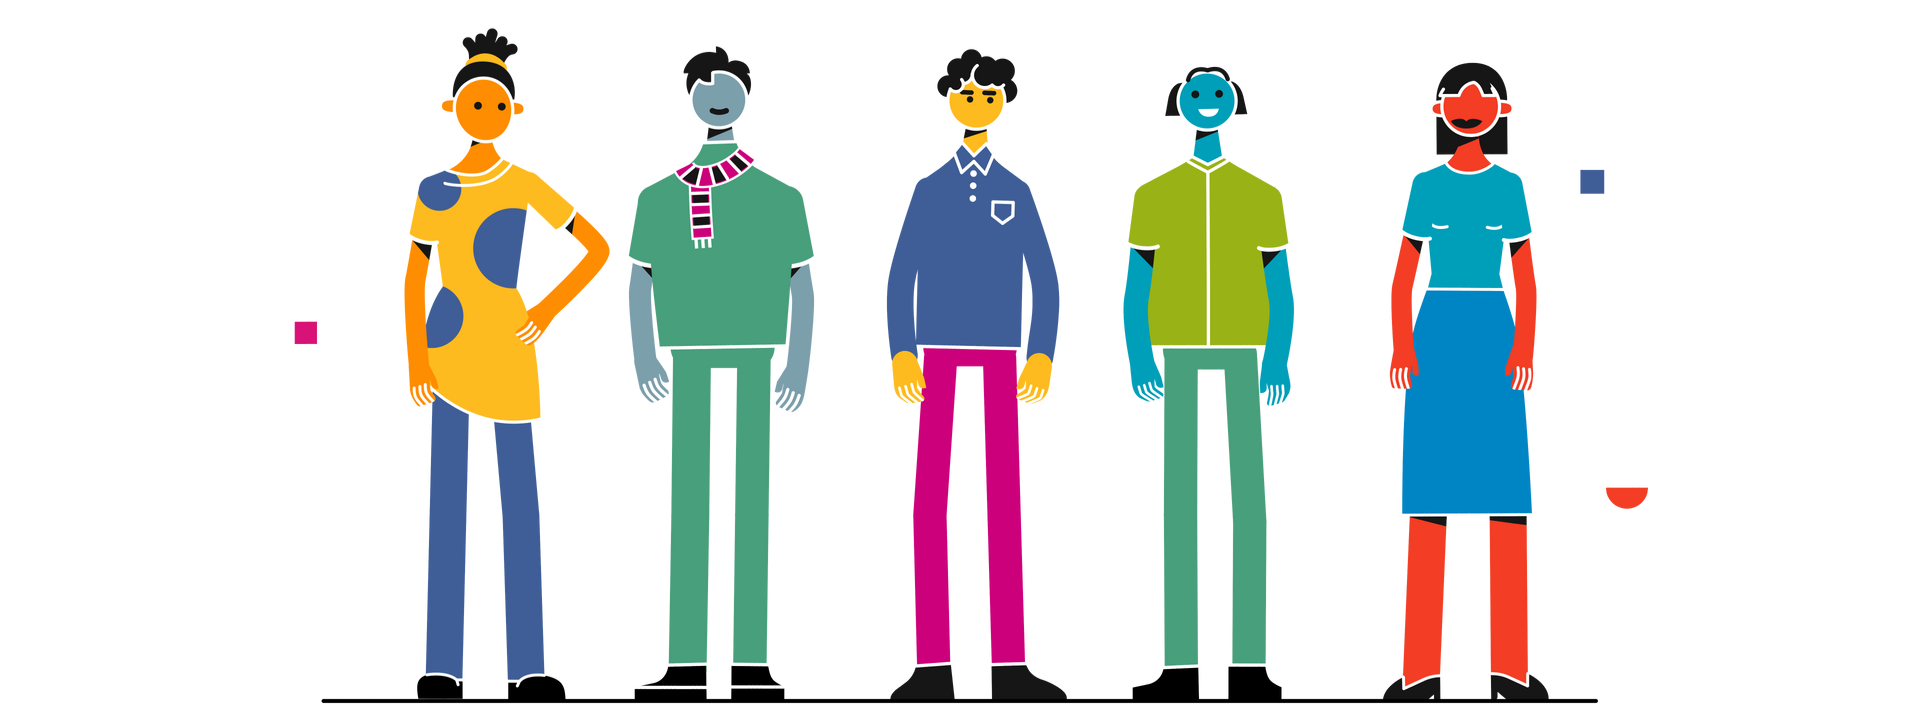 Grafische Darstellung von fünf unterschiedlichen Menschen, die nebeneinander stehen. Alle sehen unterschiedlich aus, haben verschiedene Farben und sind verschieden gekleidet.